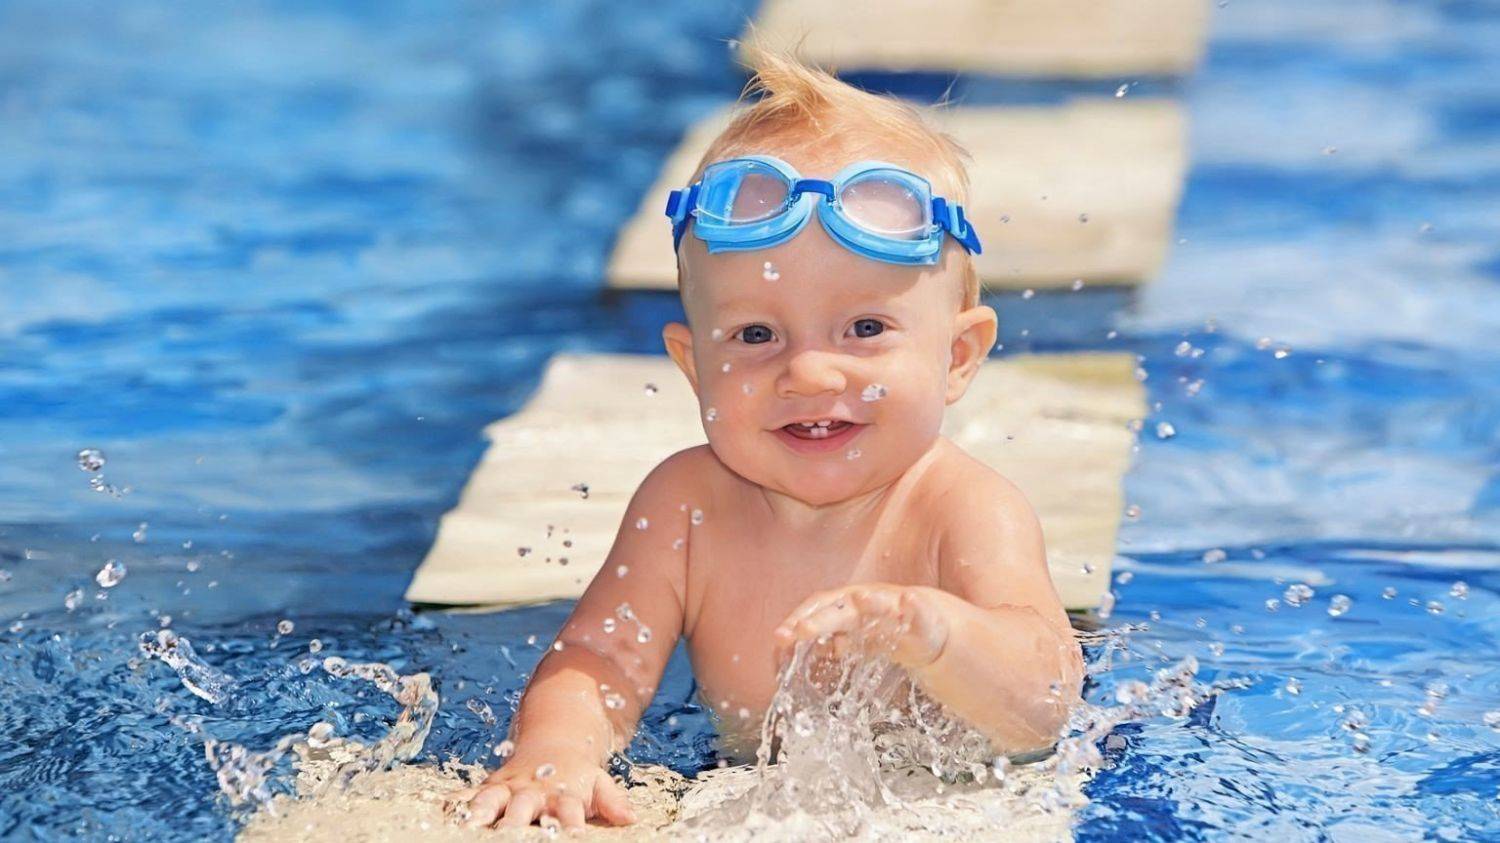 Плавание для детей в бассейне / детские занятия плаванием с тренером, видео-инструкция